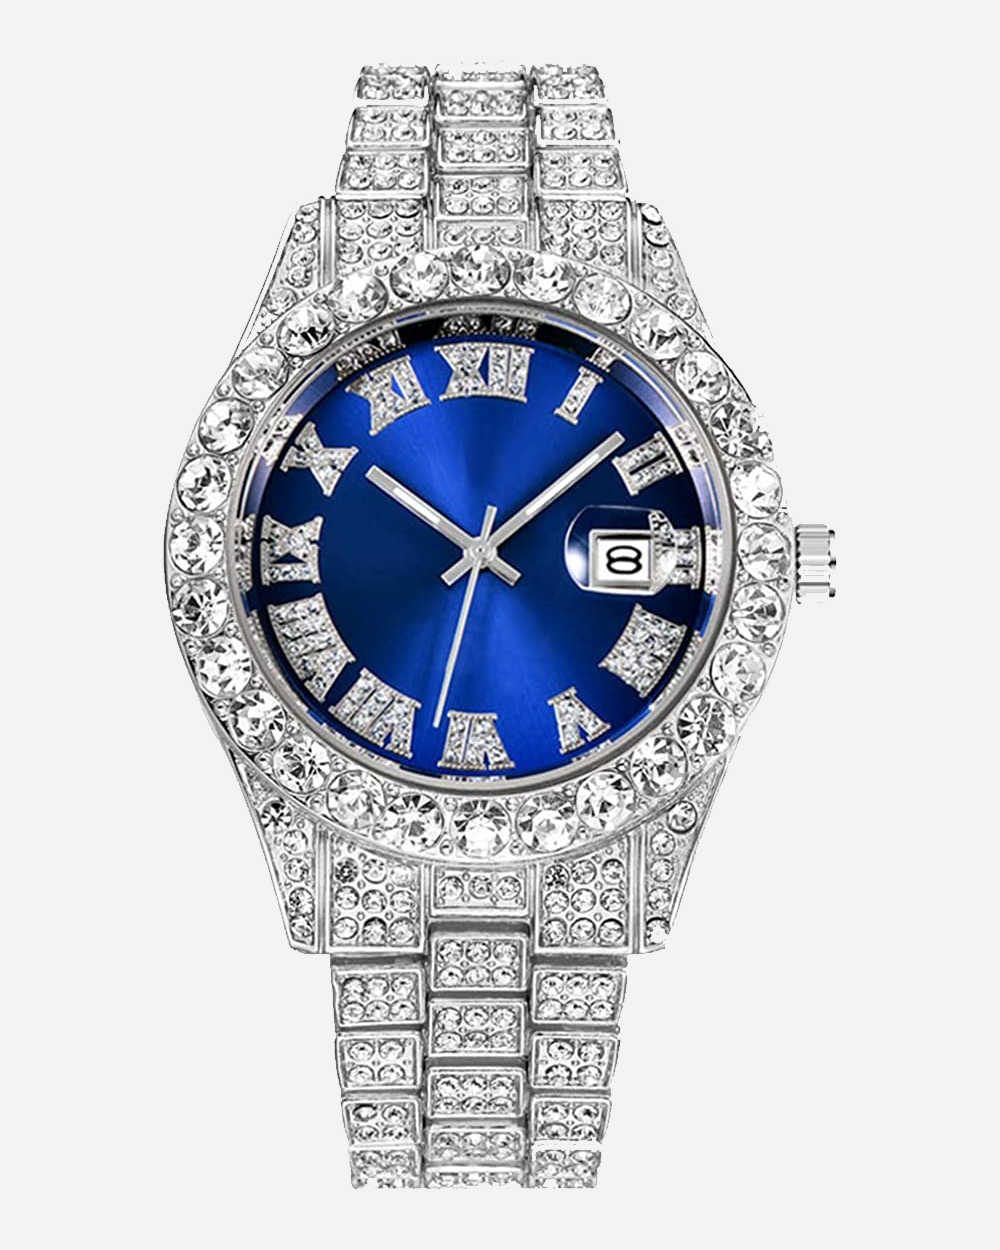 SYBLUY Blue Watch | Blauw-Zilveren Bustdown Horloge met Blauwe Wijzerplaat